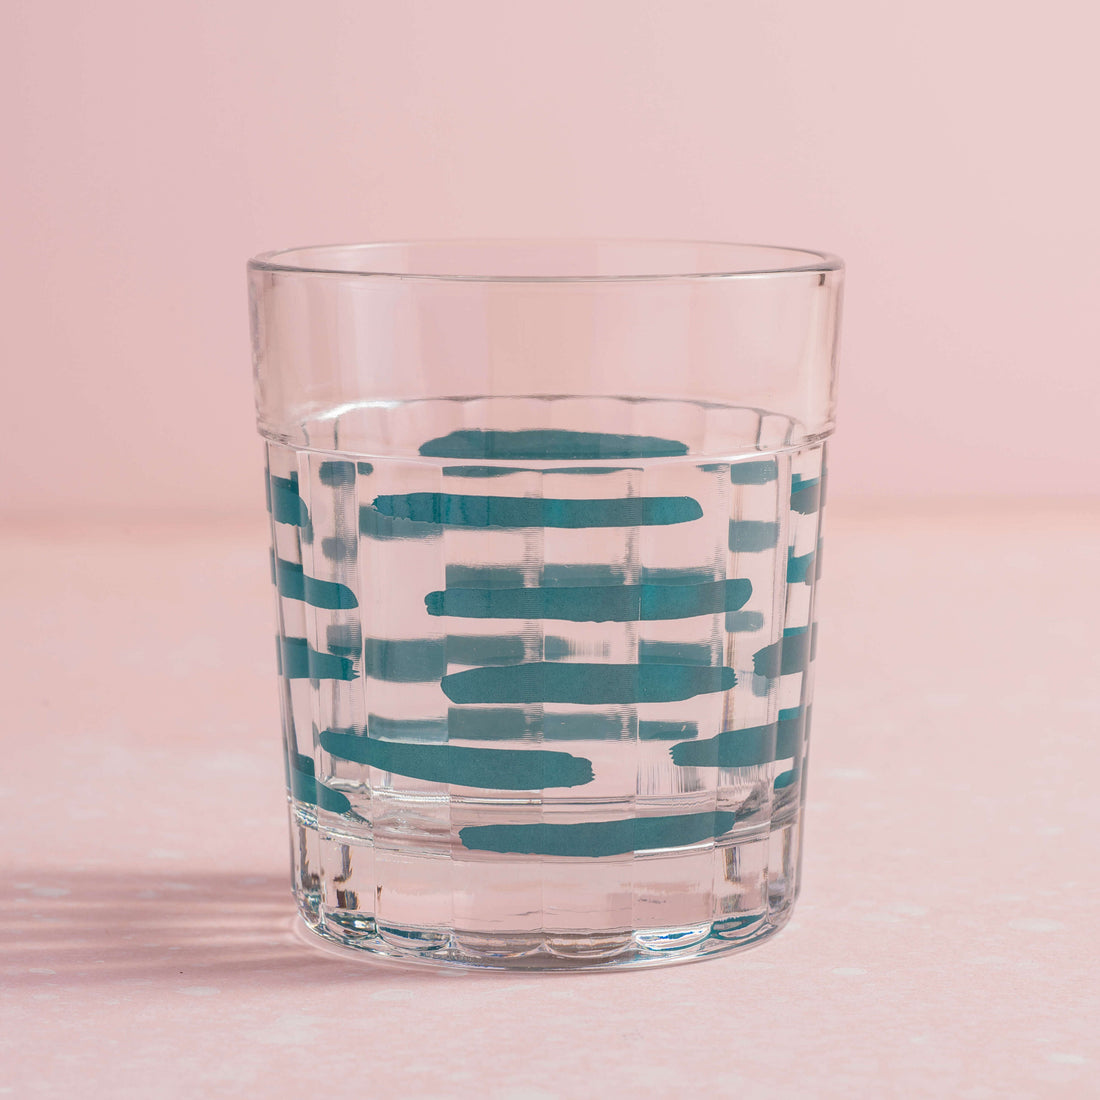 copo artista com estampa de tracinhos verdes sobre fundo rosa claro